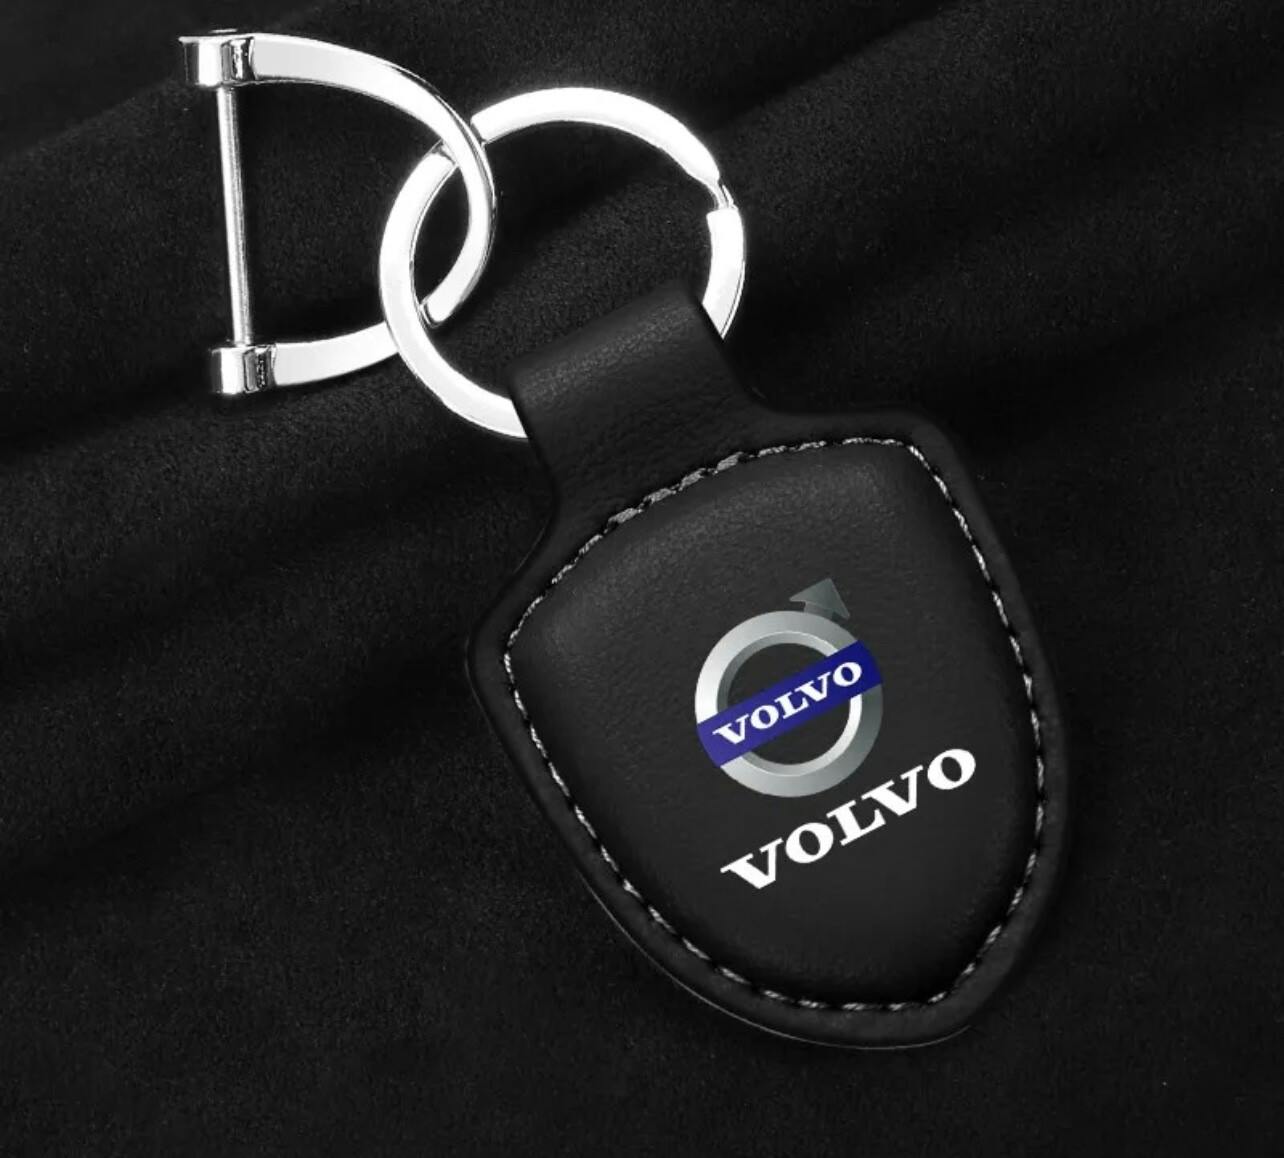 Volvo nyckelring läder - Biltillbehör Sverige AB, Org.num: 559374-8378